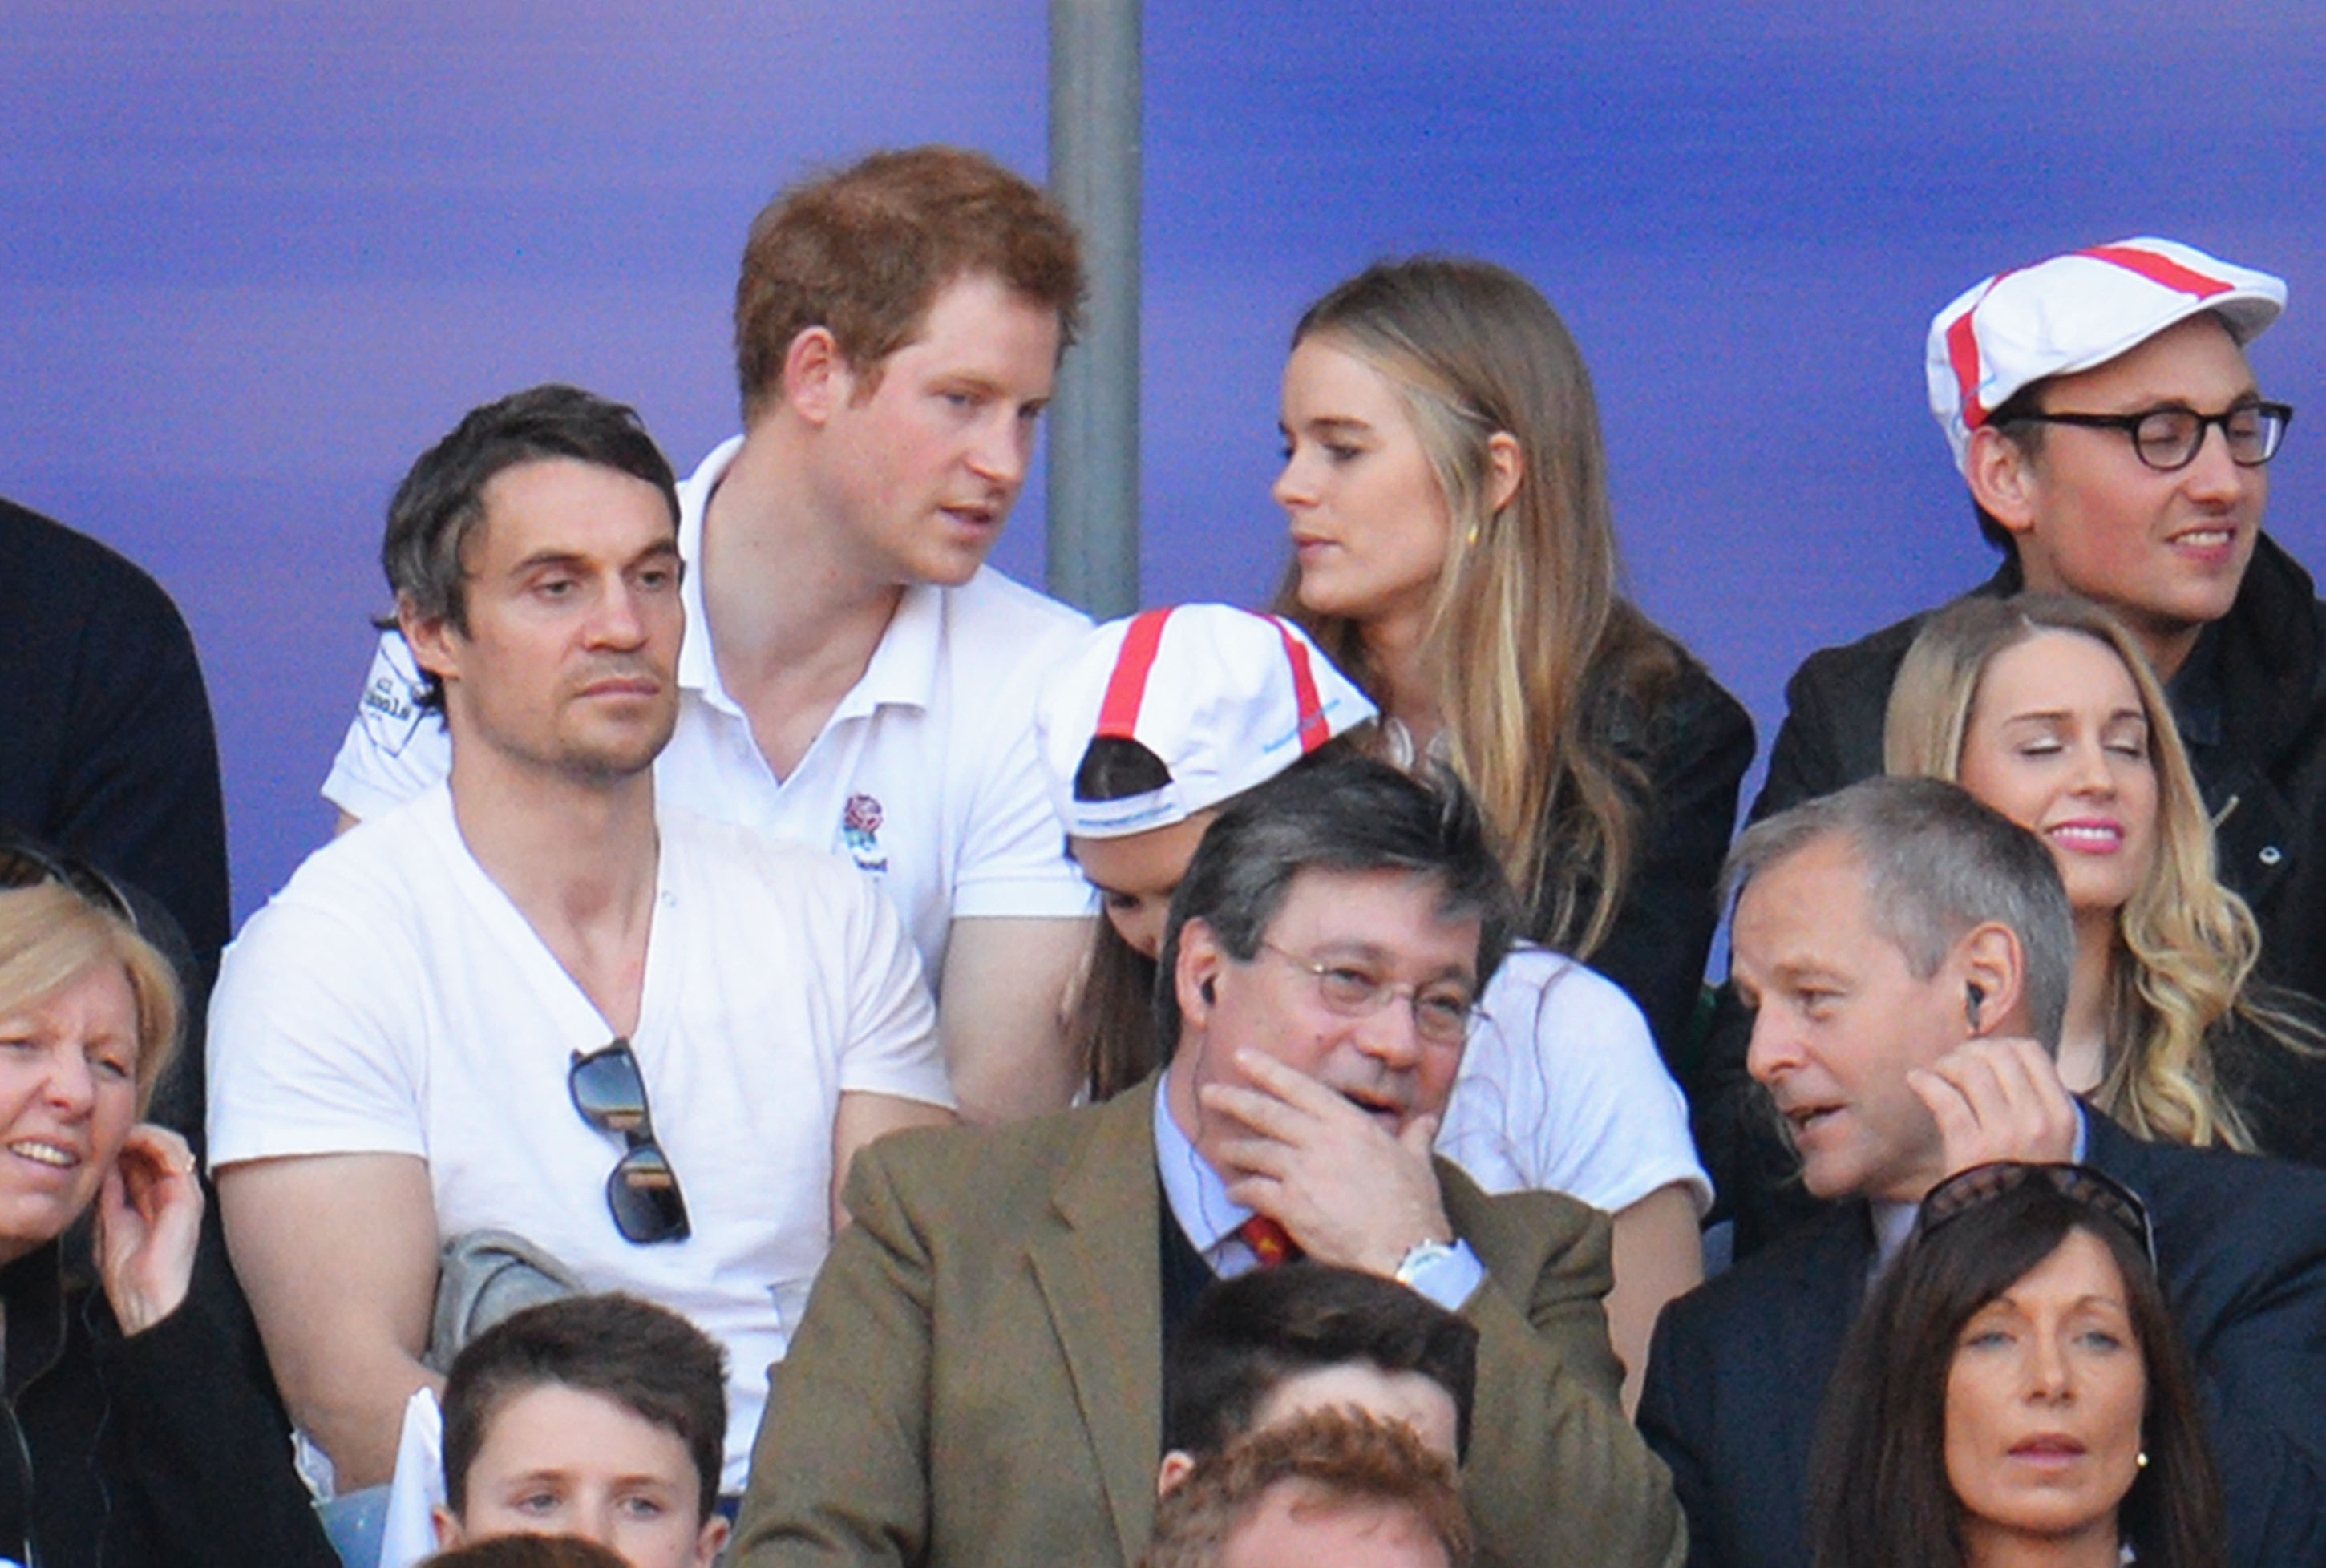 Prinz Harry und Cressida Bonas schauen während des RBS Six Nations Spiels zwischen England und Wales in London, England, am 9. März 2014 zu. | Quelle: Getty Images